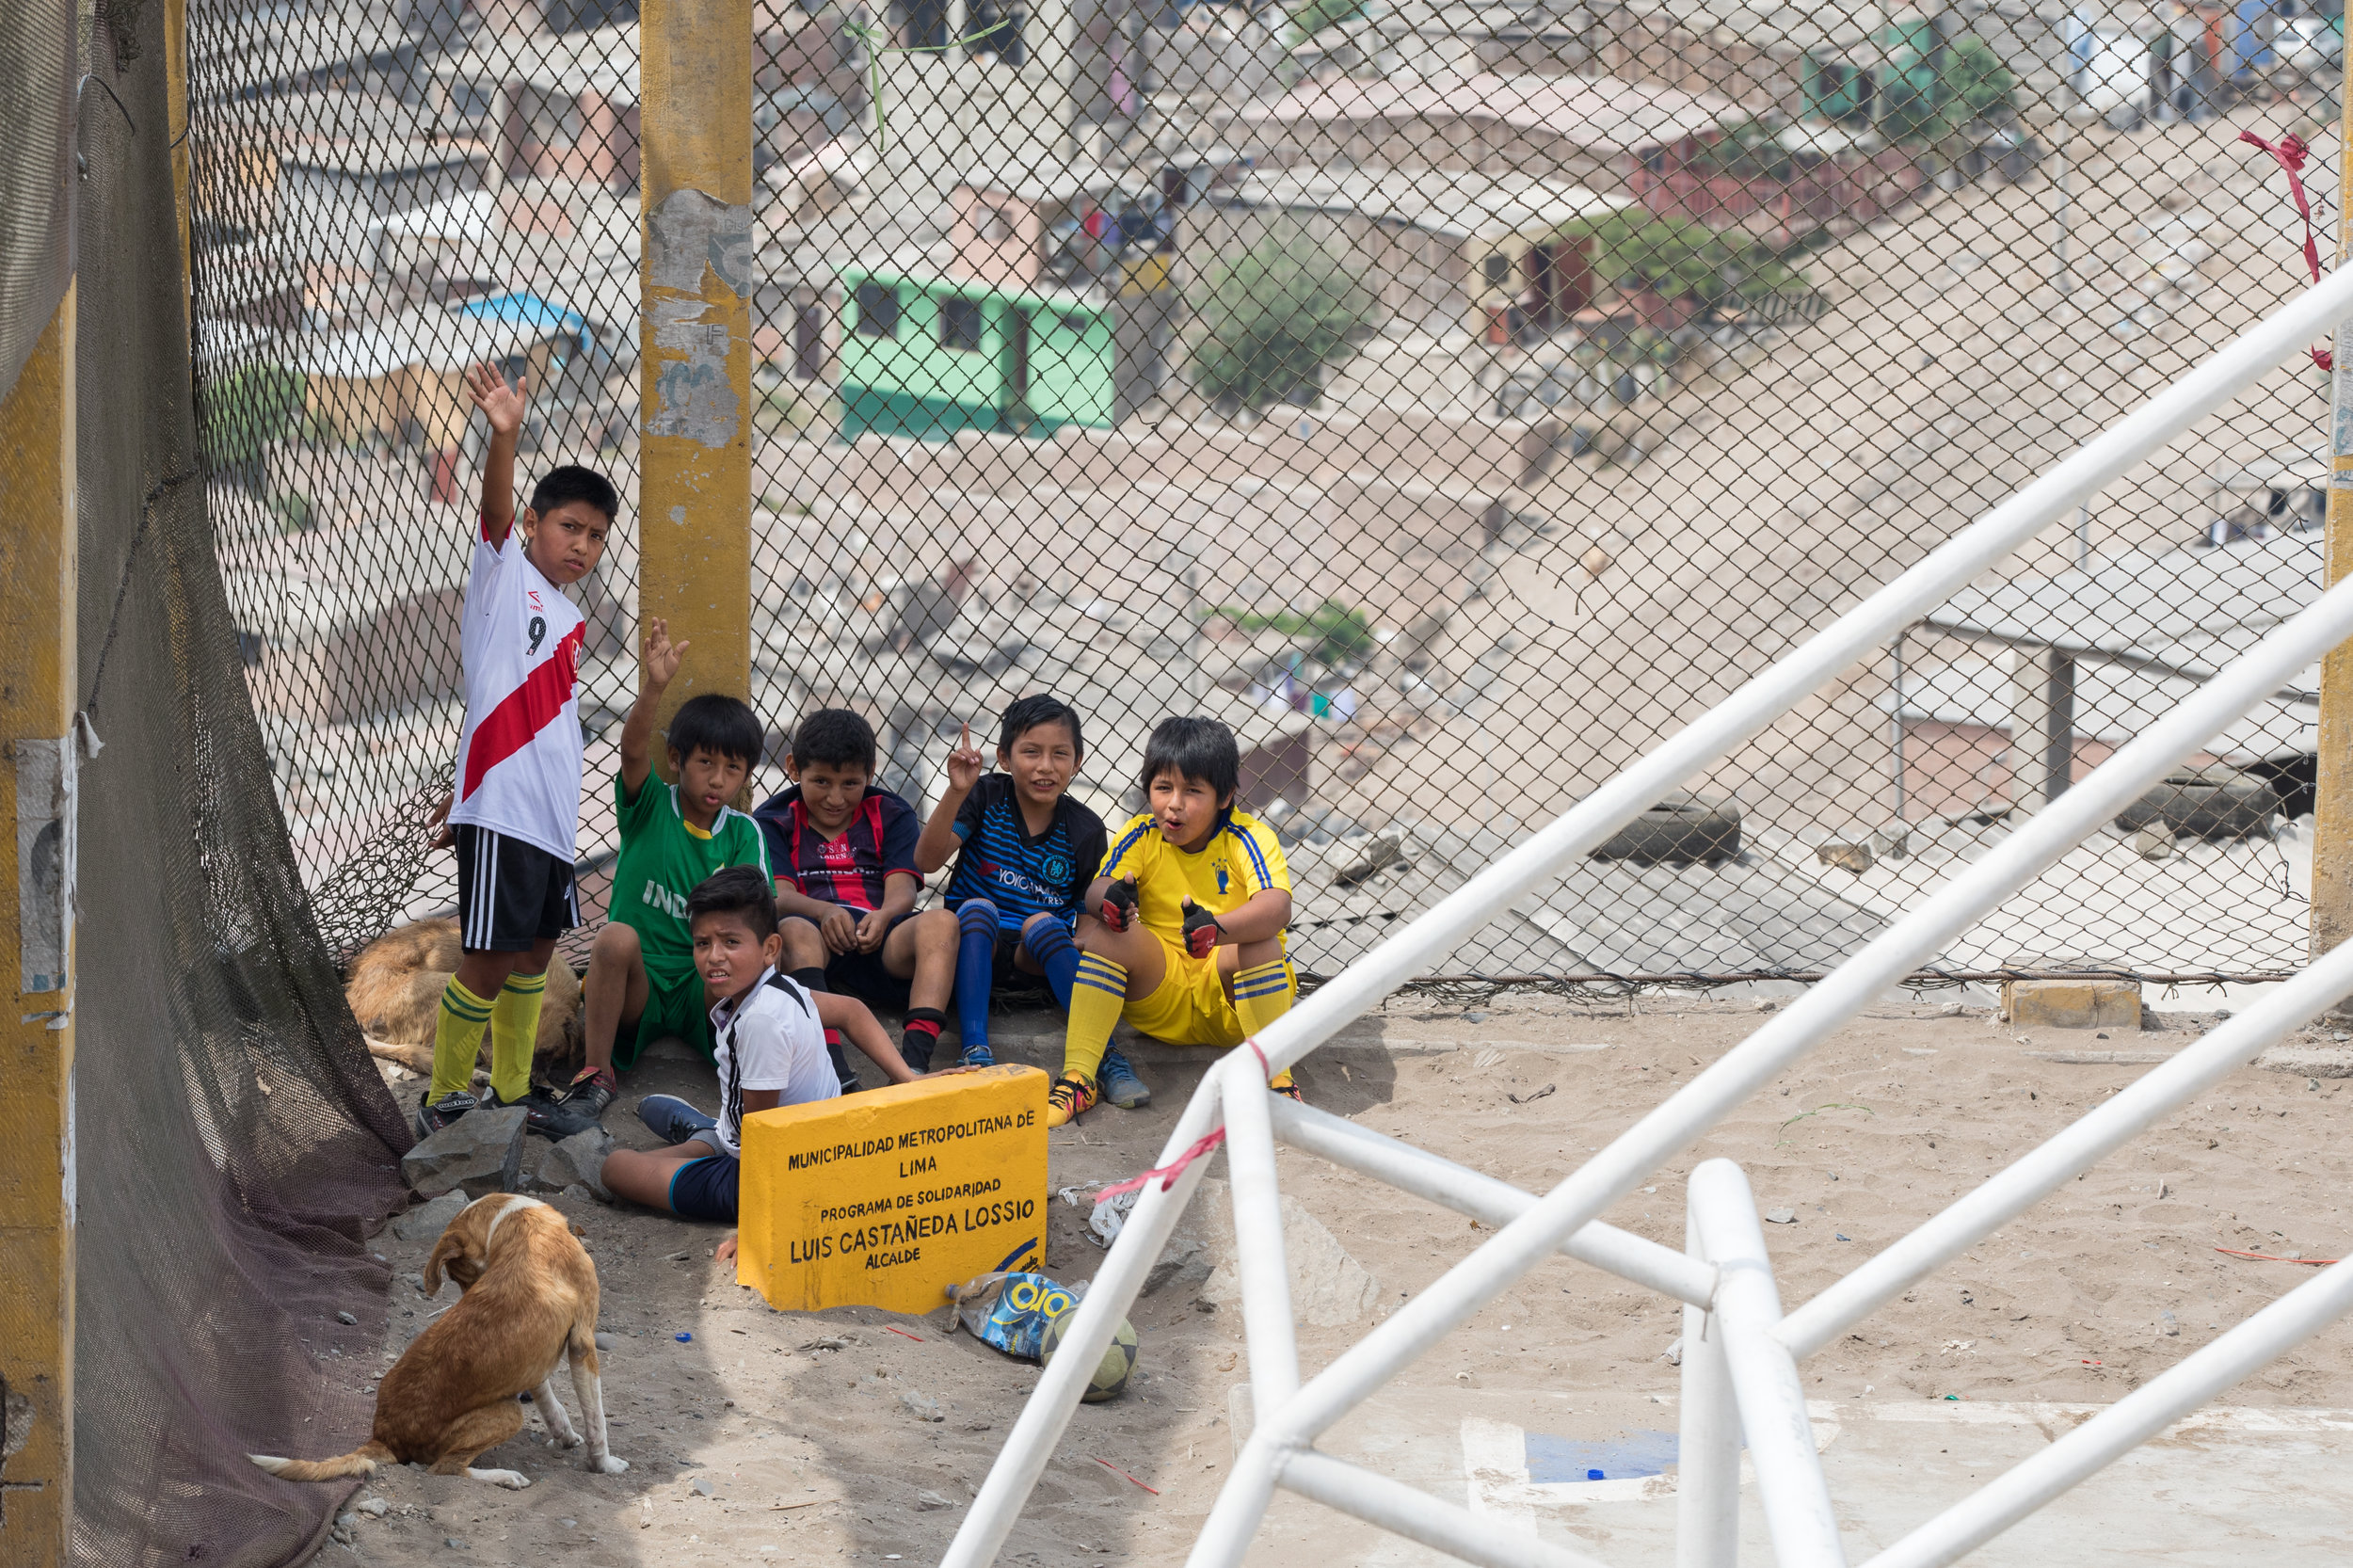 Peru's future football stars taking a break from the game in San Juan de Miraflores, Lima, Peru.